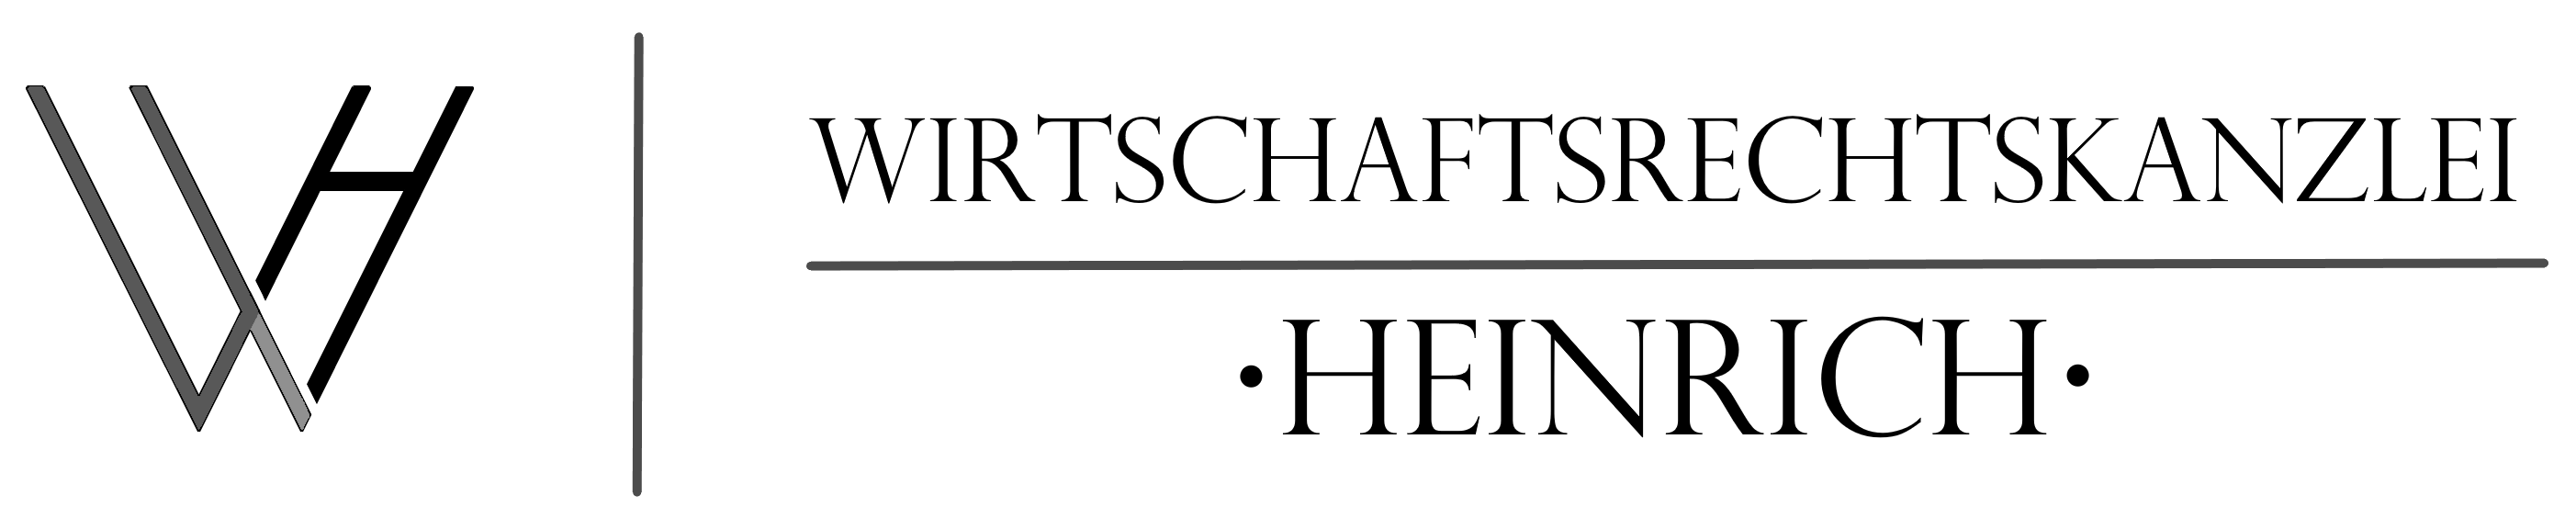 (c) Wirtschaftsrechtskanzlei-heinrich.com